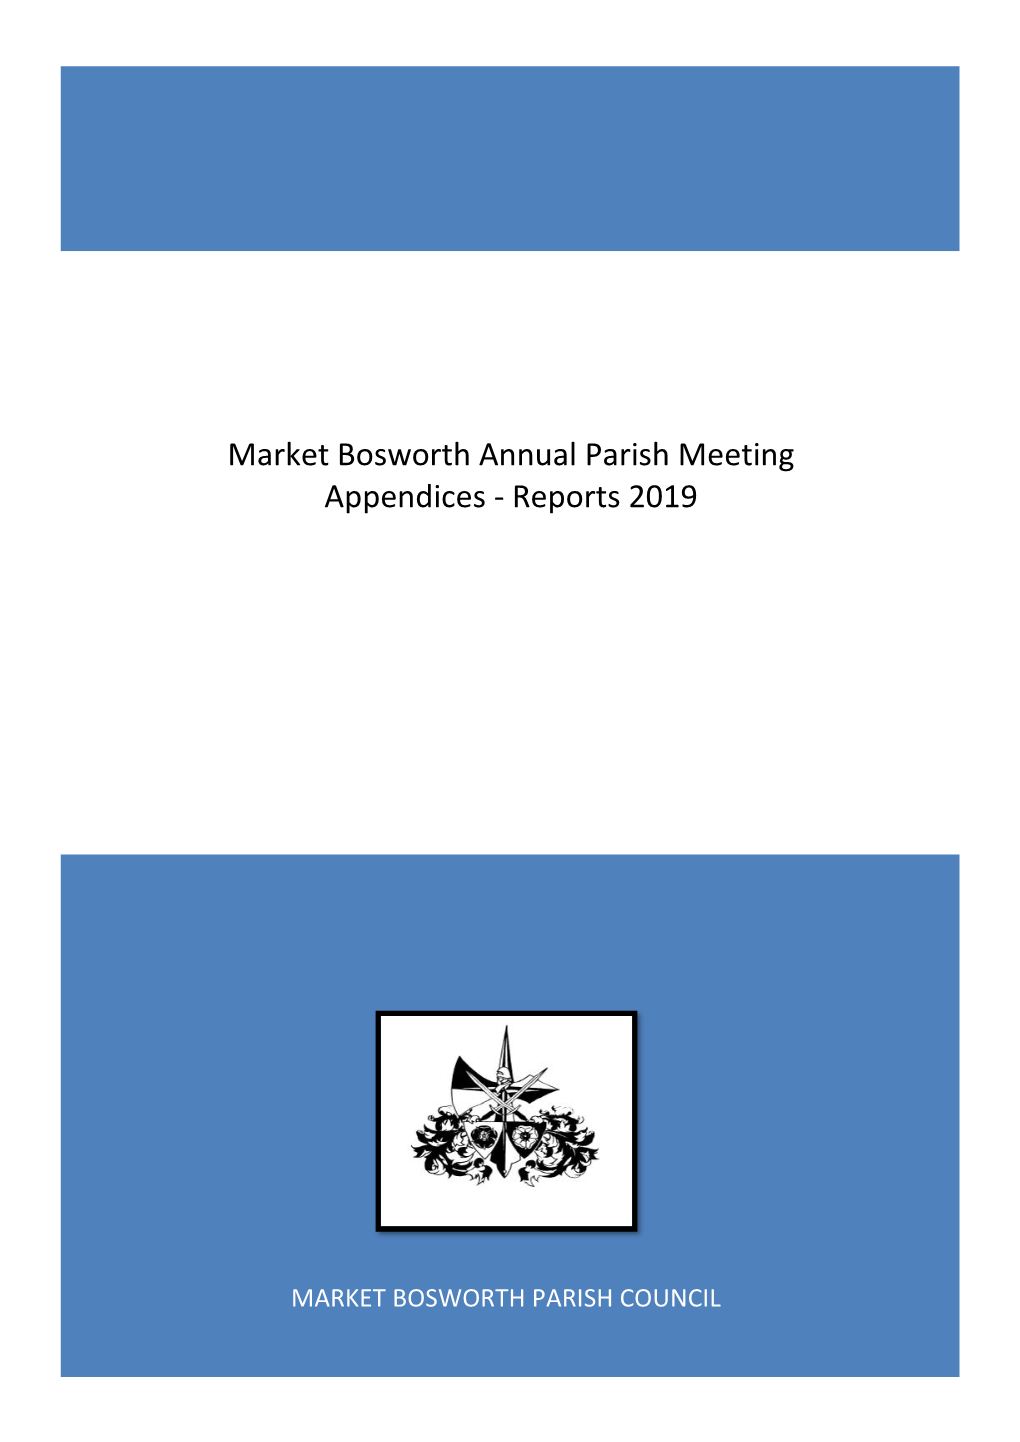 Market Bosworth Annual Parish Meeting Appendices - Reports 2019